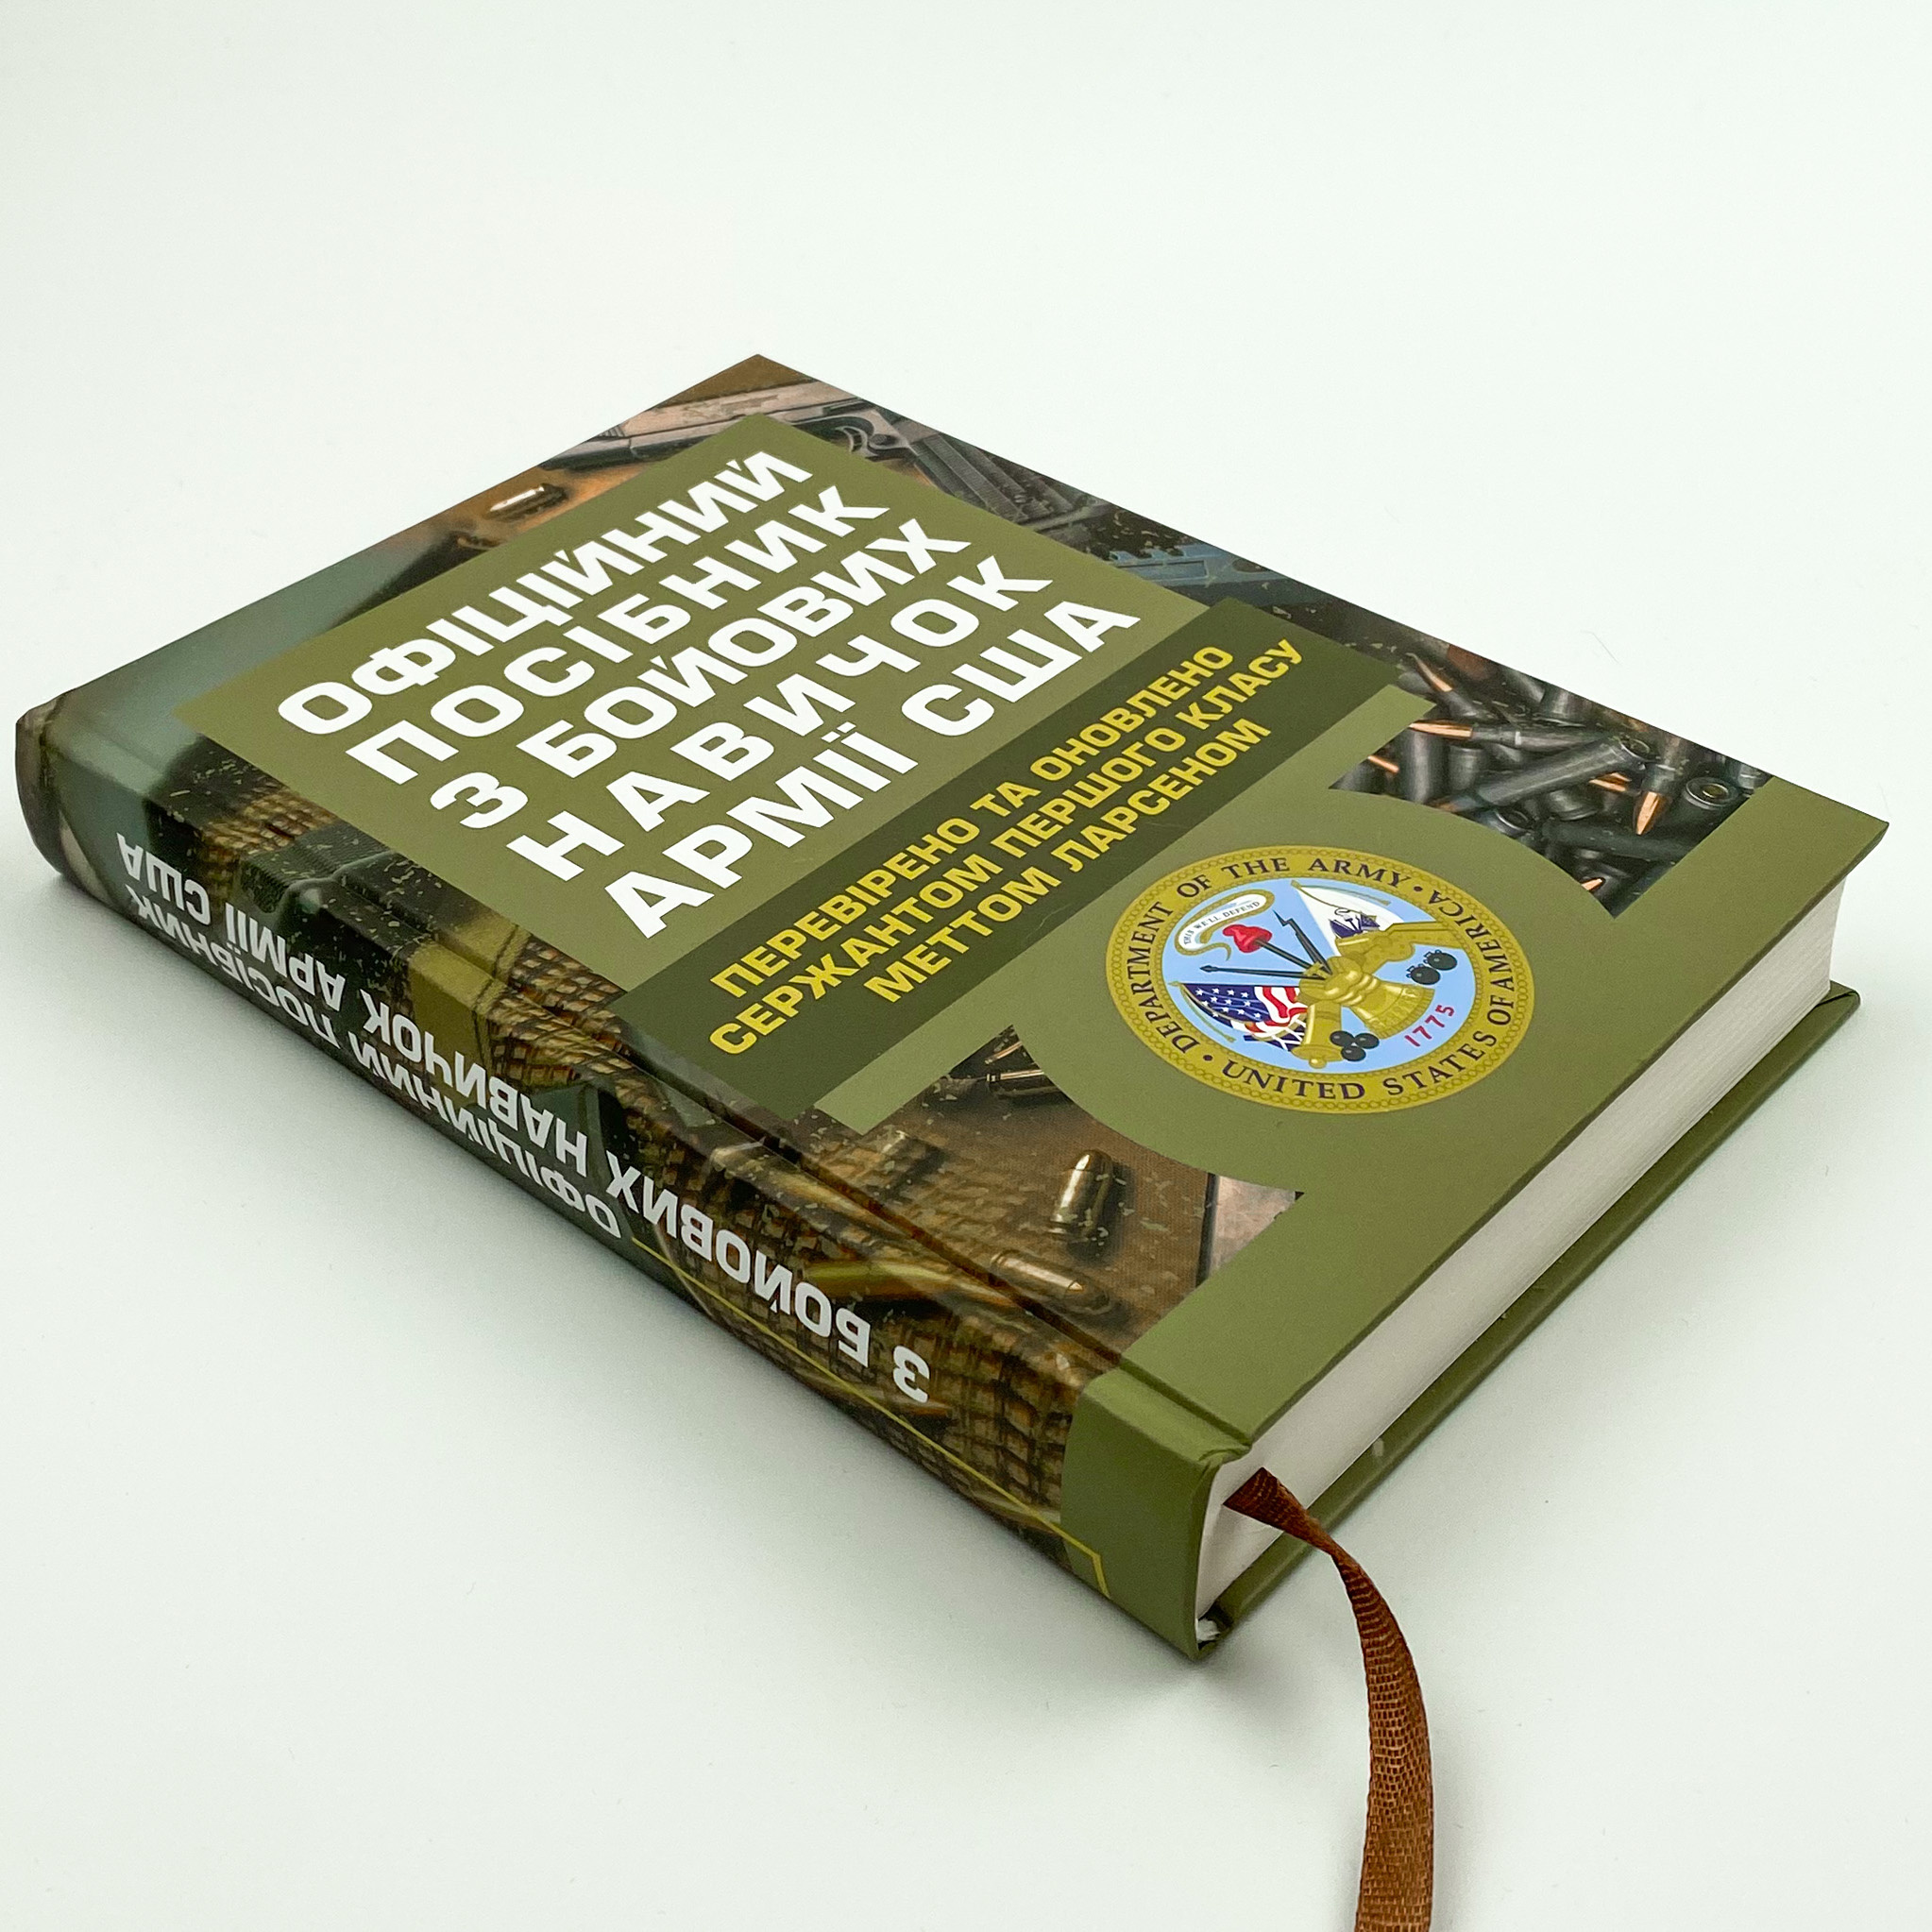 Офіційний посібник з бойових навичок армії США. Автор — Метт Ларсен. 